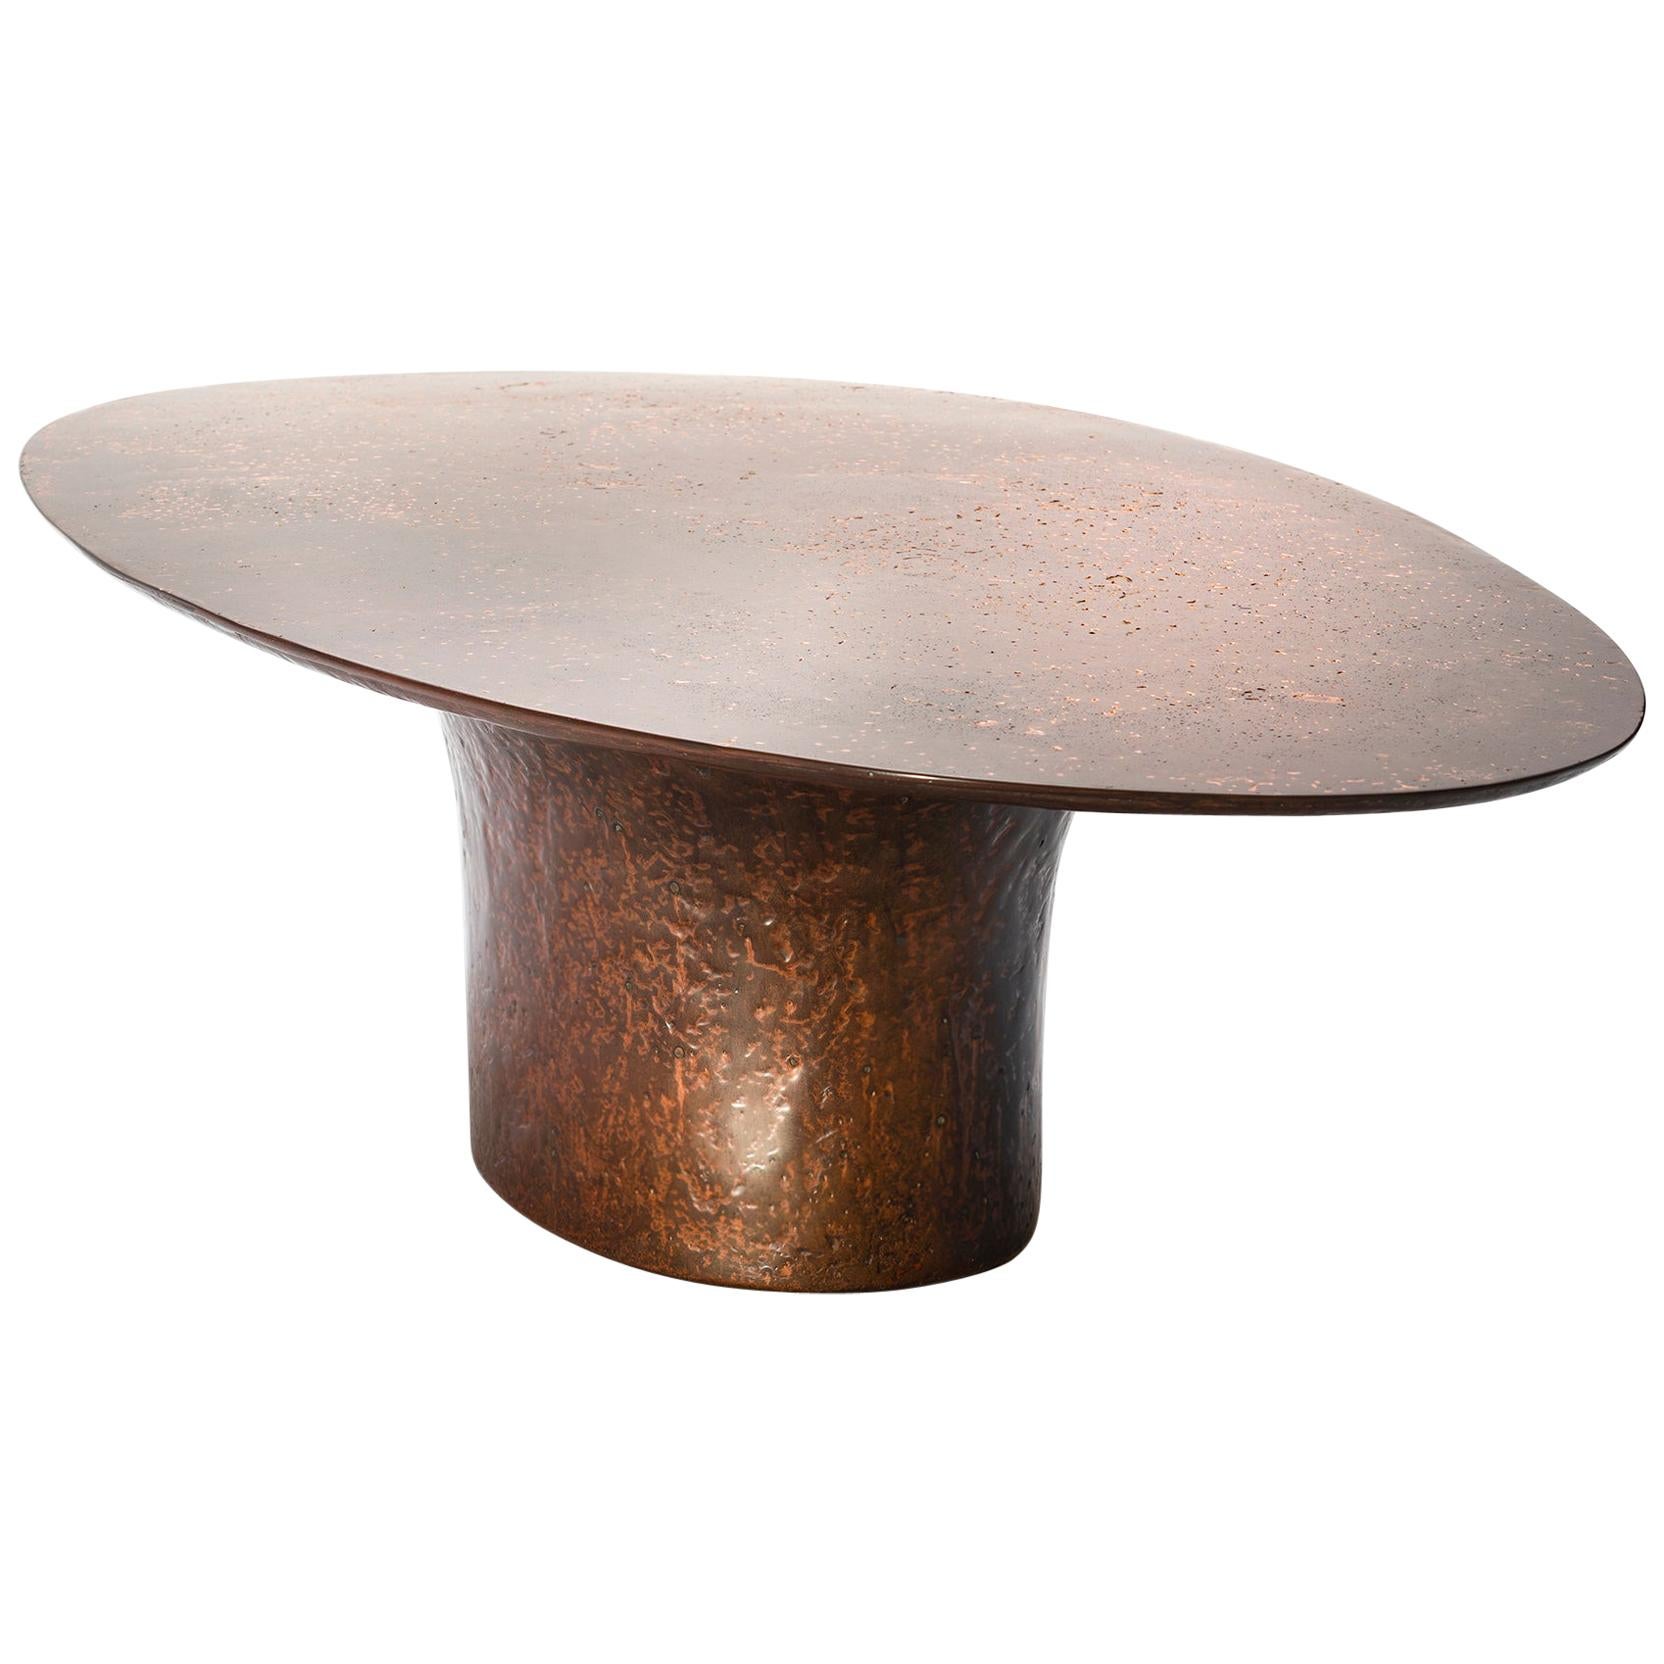 NR Copper V1 -21st Century Contemporary Liquid Copper Oval Coffee Table